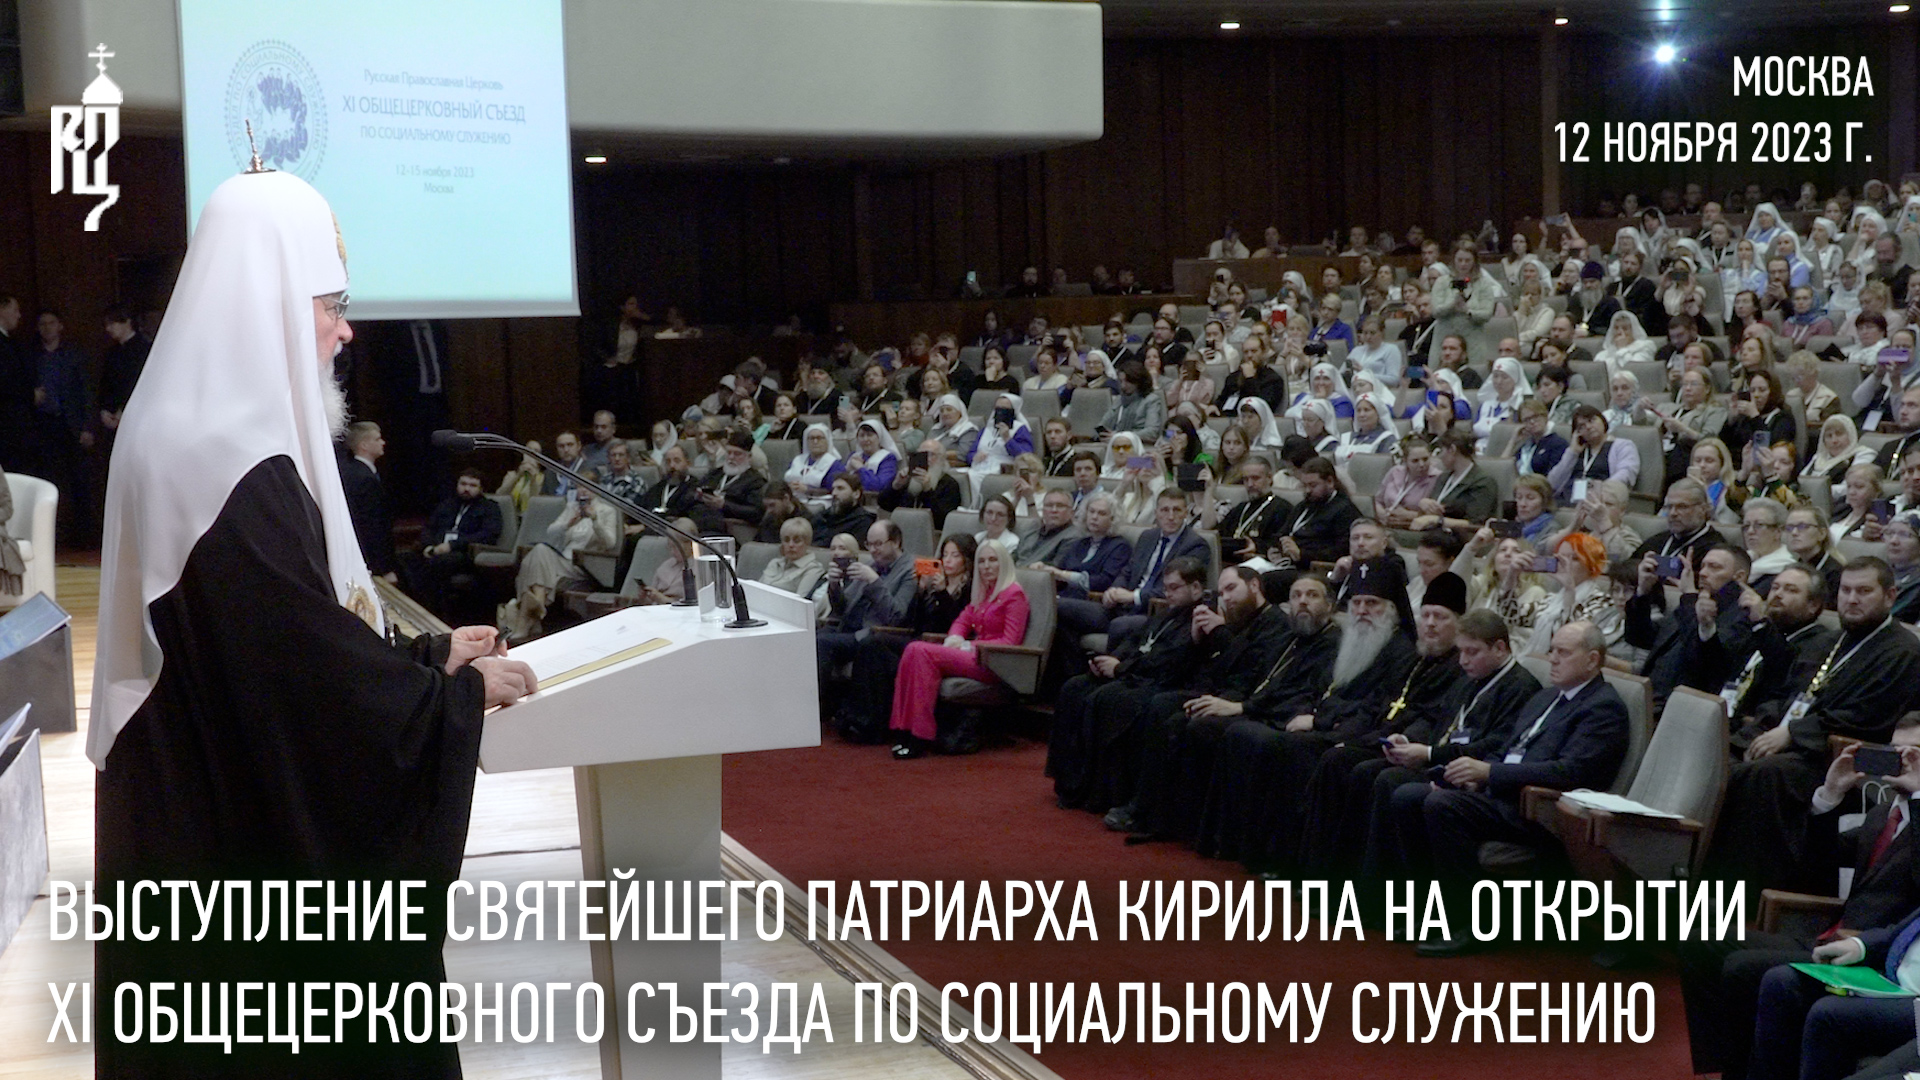 Выступление Святейшего Патриарха Кирилла на открытии Общецерковного съезда по социальному служению